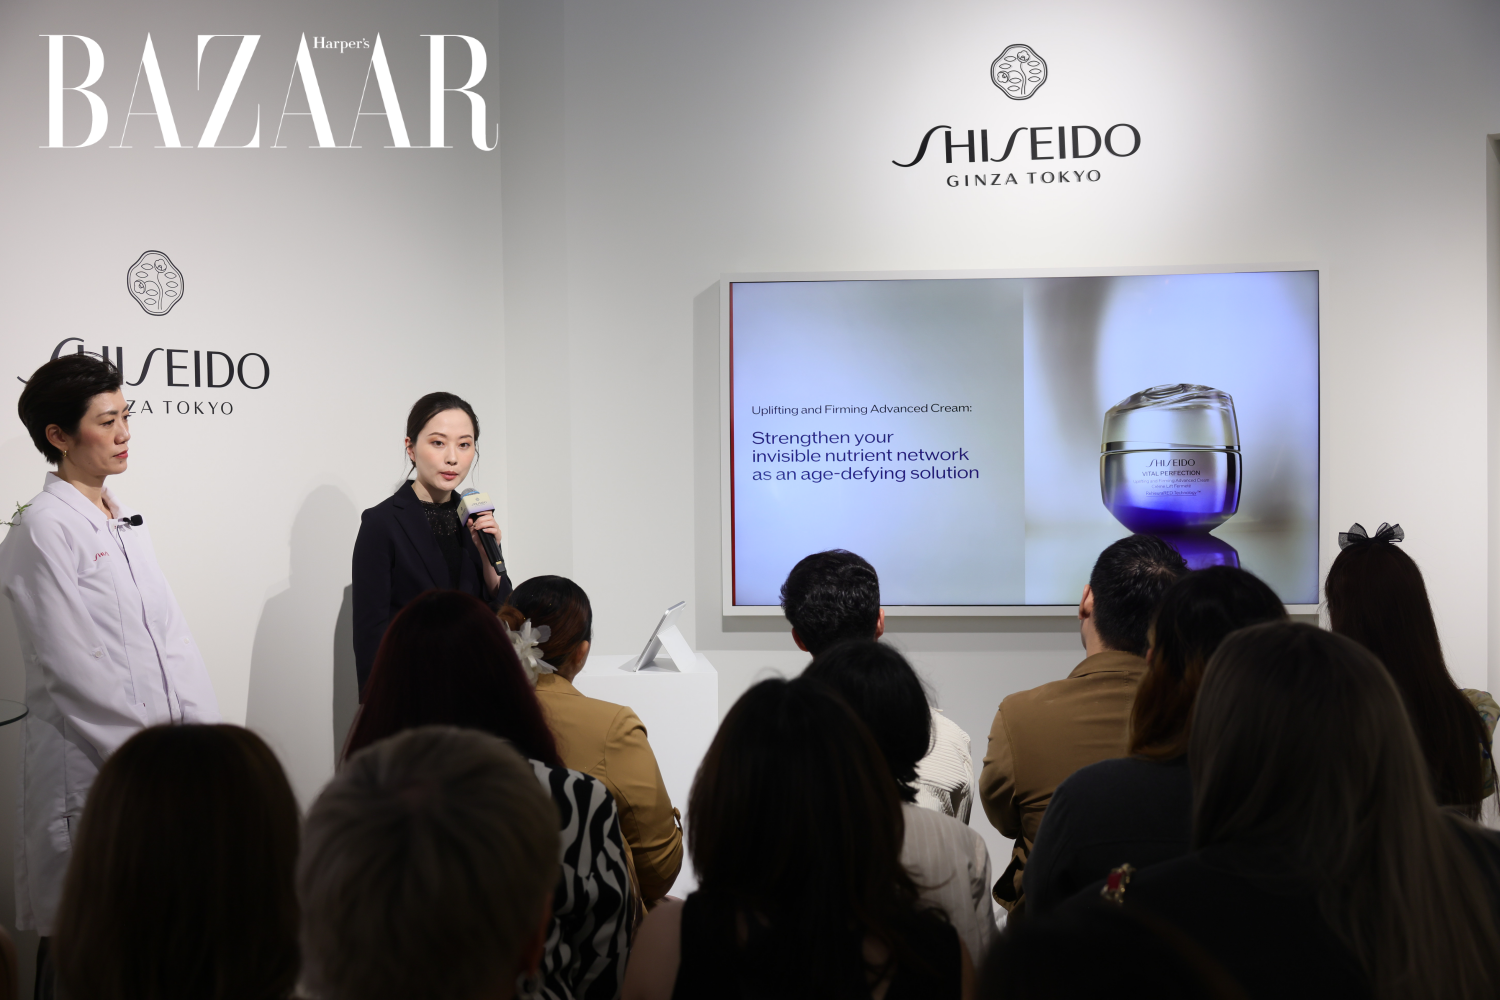 Công nghệ kép được cấp bằng sáng chế SafflowerRED™ và ReNeuraRED Technology™ được truyền tải tới người tham dự bởi Giám đốc Khoa học Toàn cầu, Minako Ando và Giám đốc Truyền thông & Tiếp thị Toàn cầu Michiko Nakano